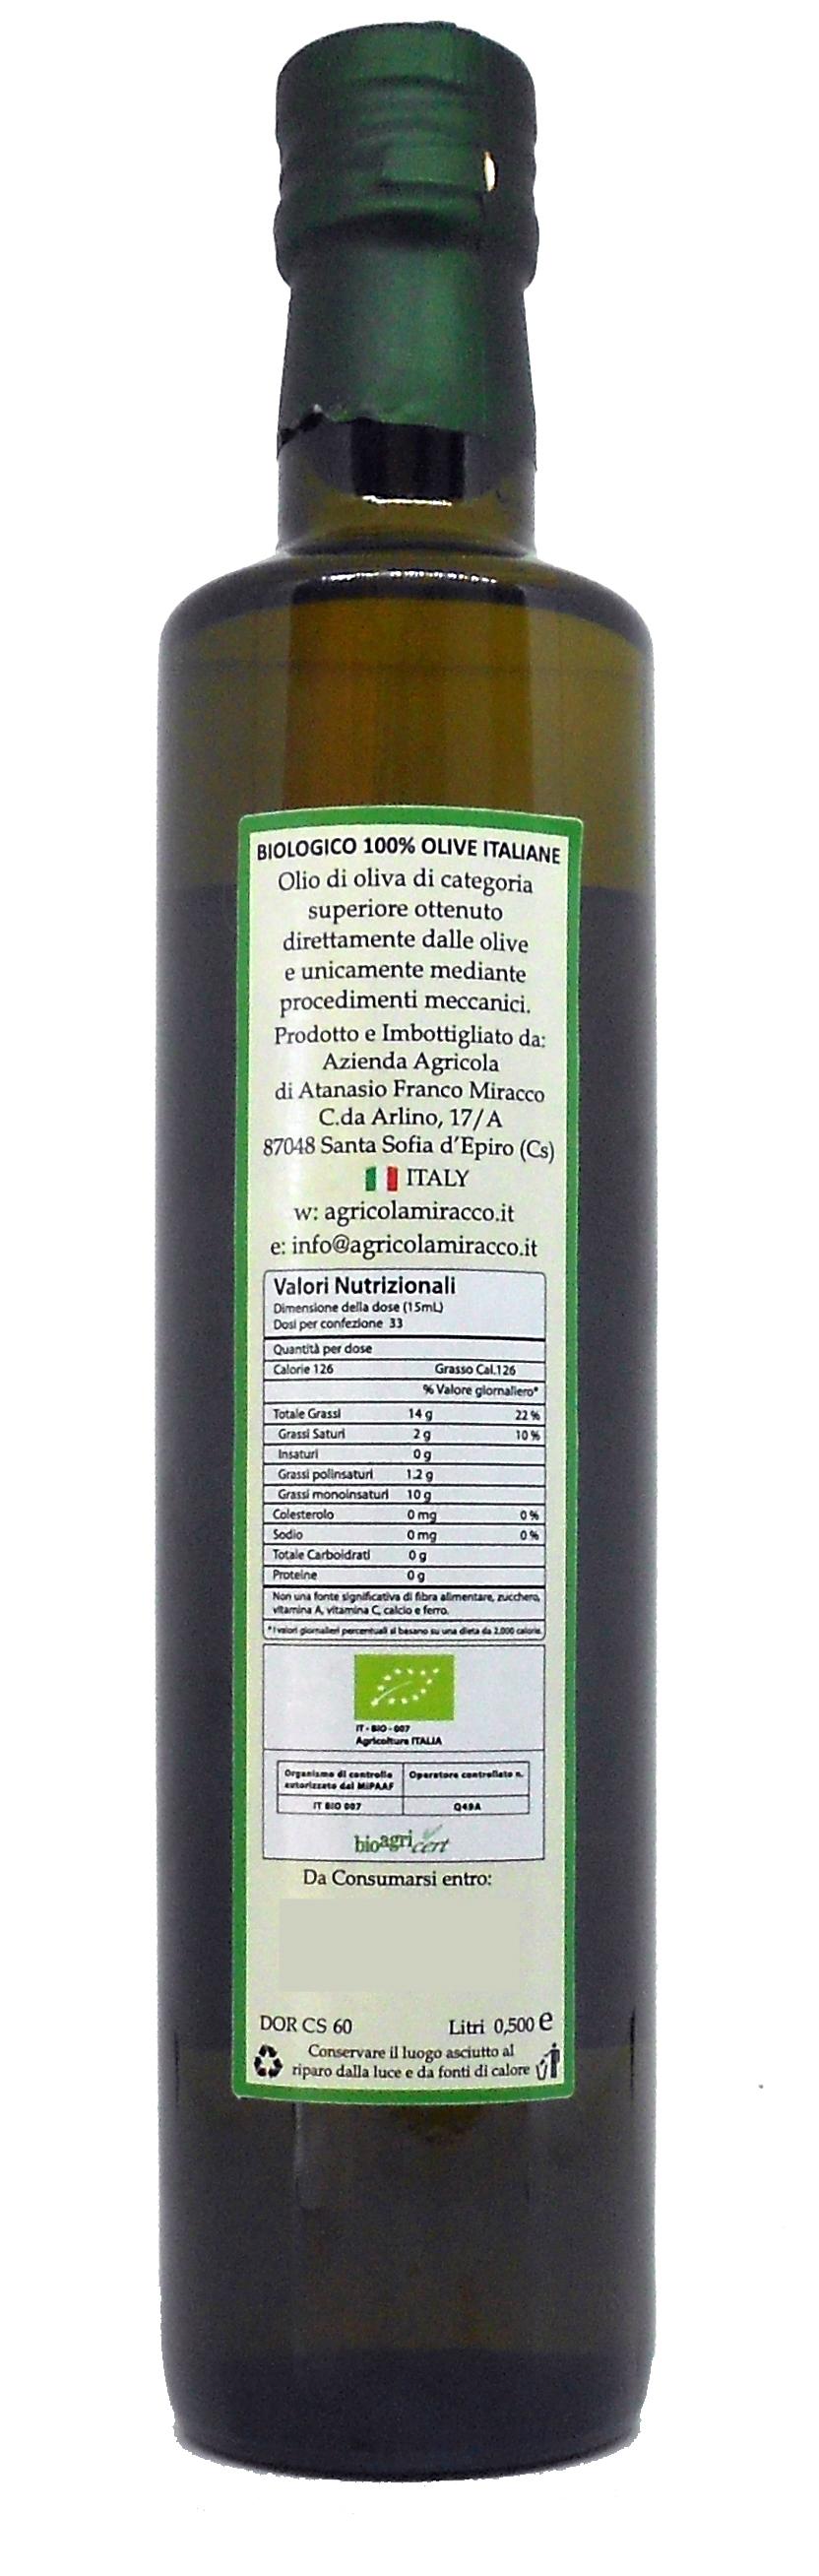 Olio Extravergine di Oliva Biologico " Il Casale Antico" 100% Italiano Bottiglia 500ml